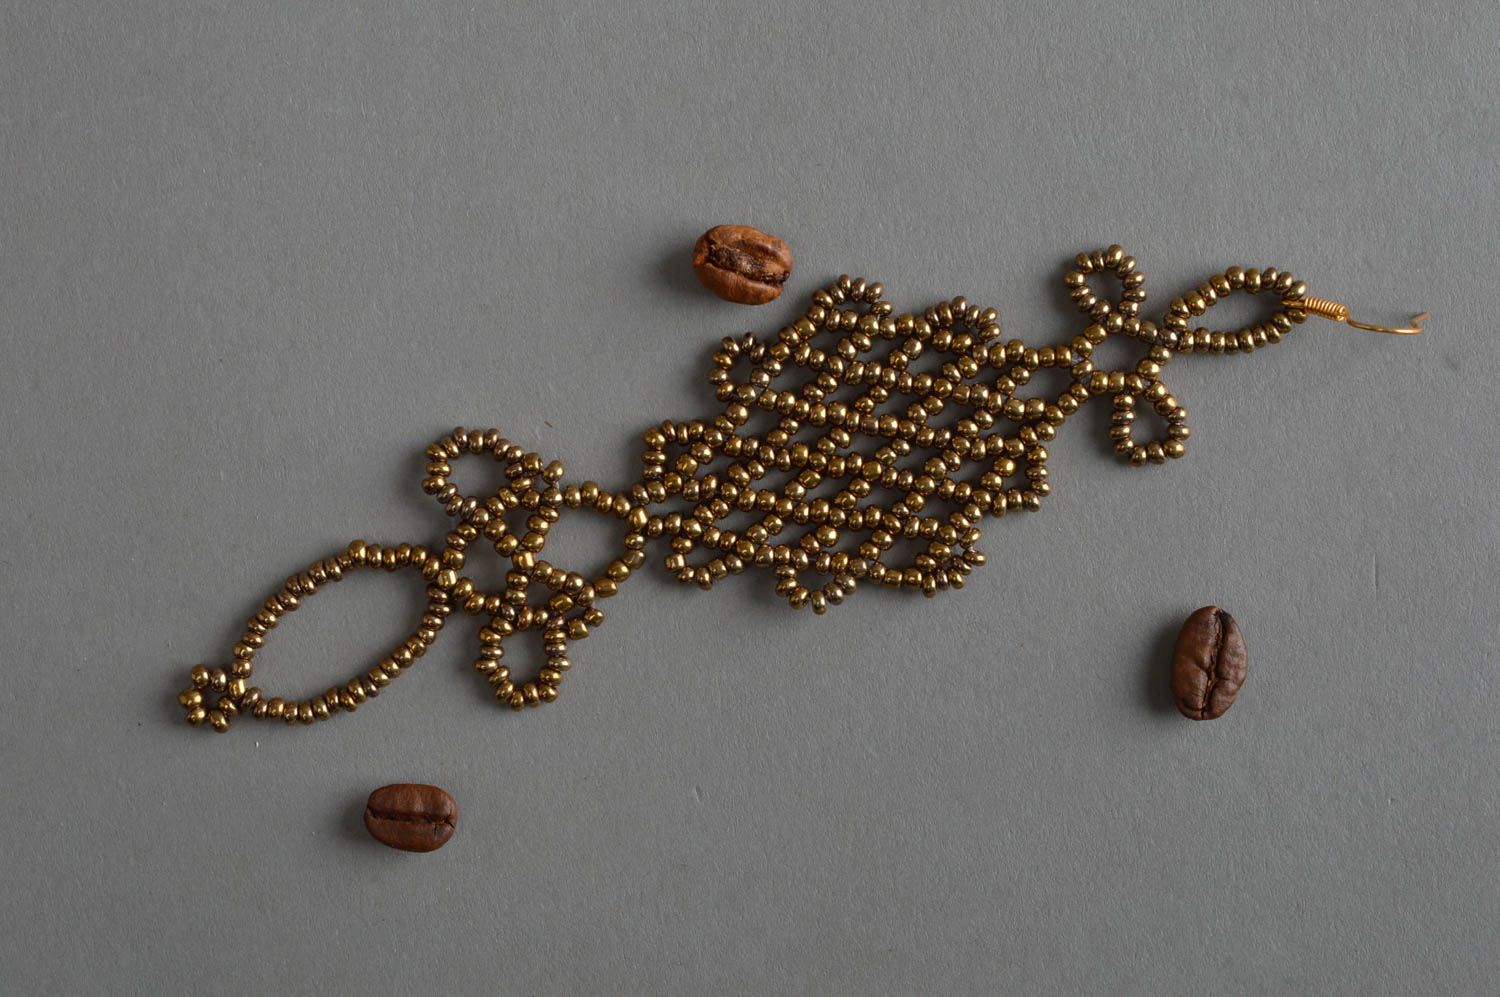 Бисерная серьга длинная ажурная бронзового оттенка плетеная ручной работы фото 1